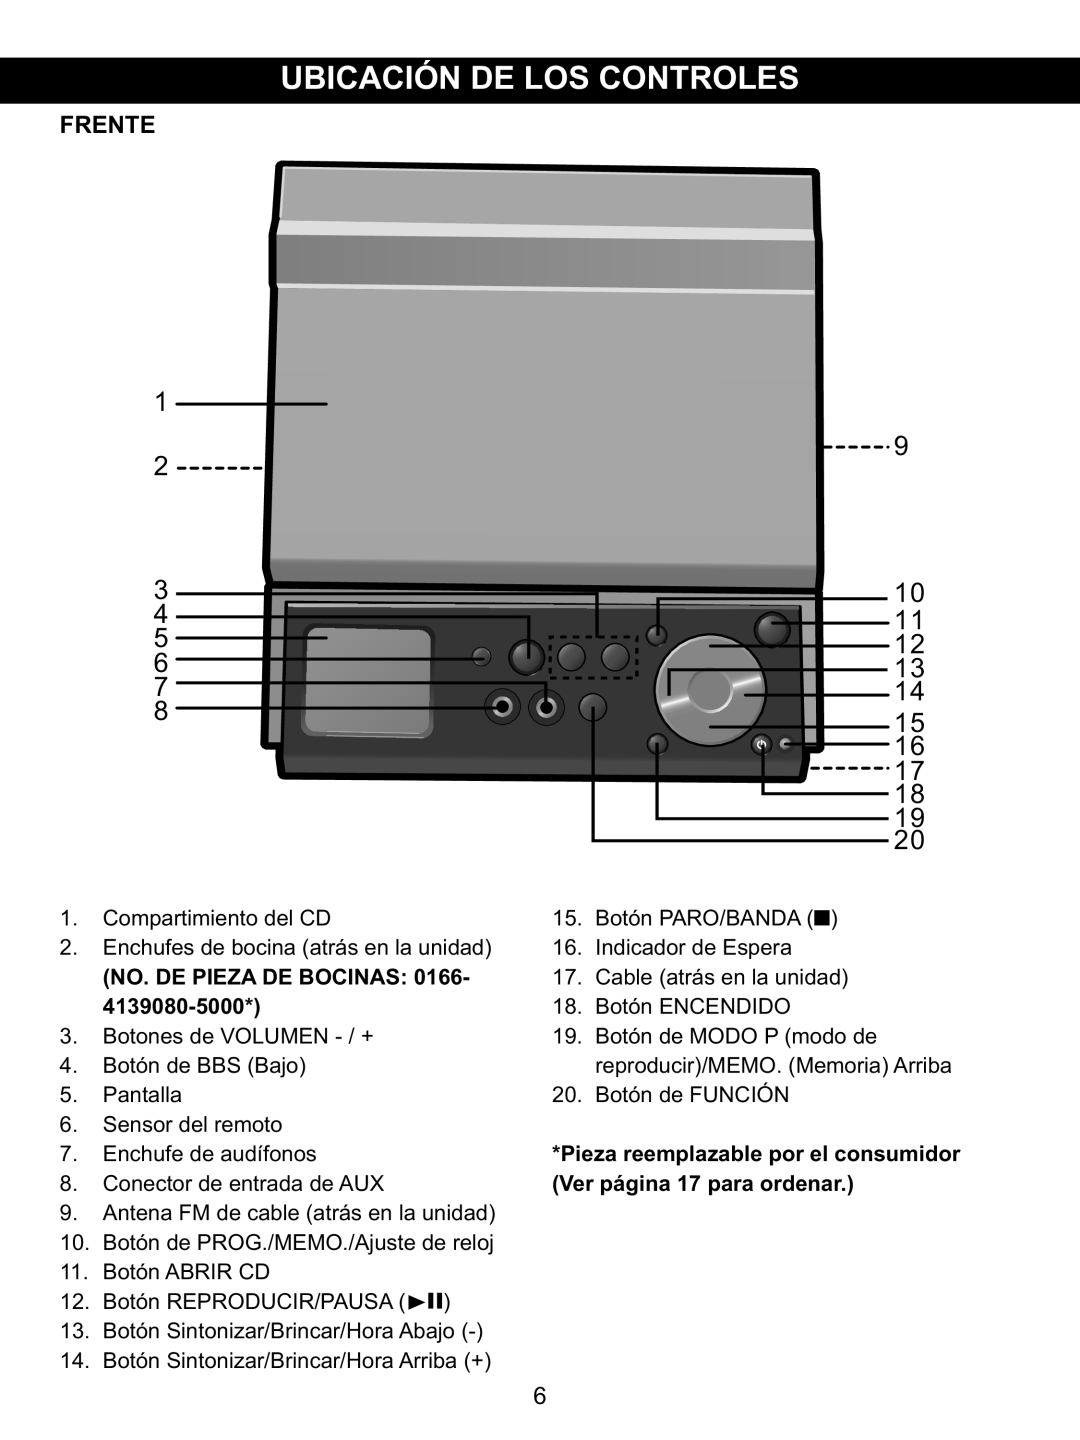 Memorex MX4139 manual 1 2 3, 9 10 11 12 13, Frente, No. De Pieza De Bocinas 